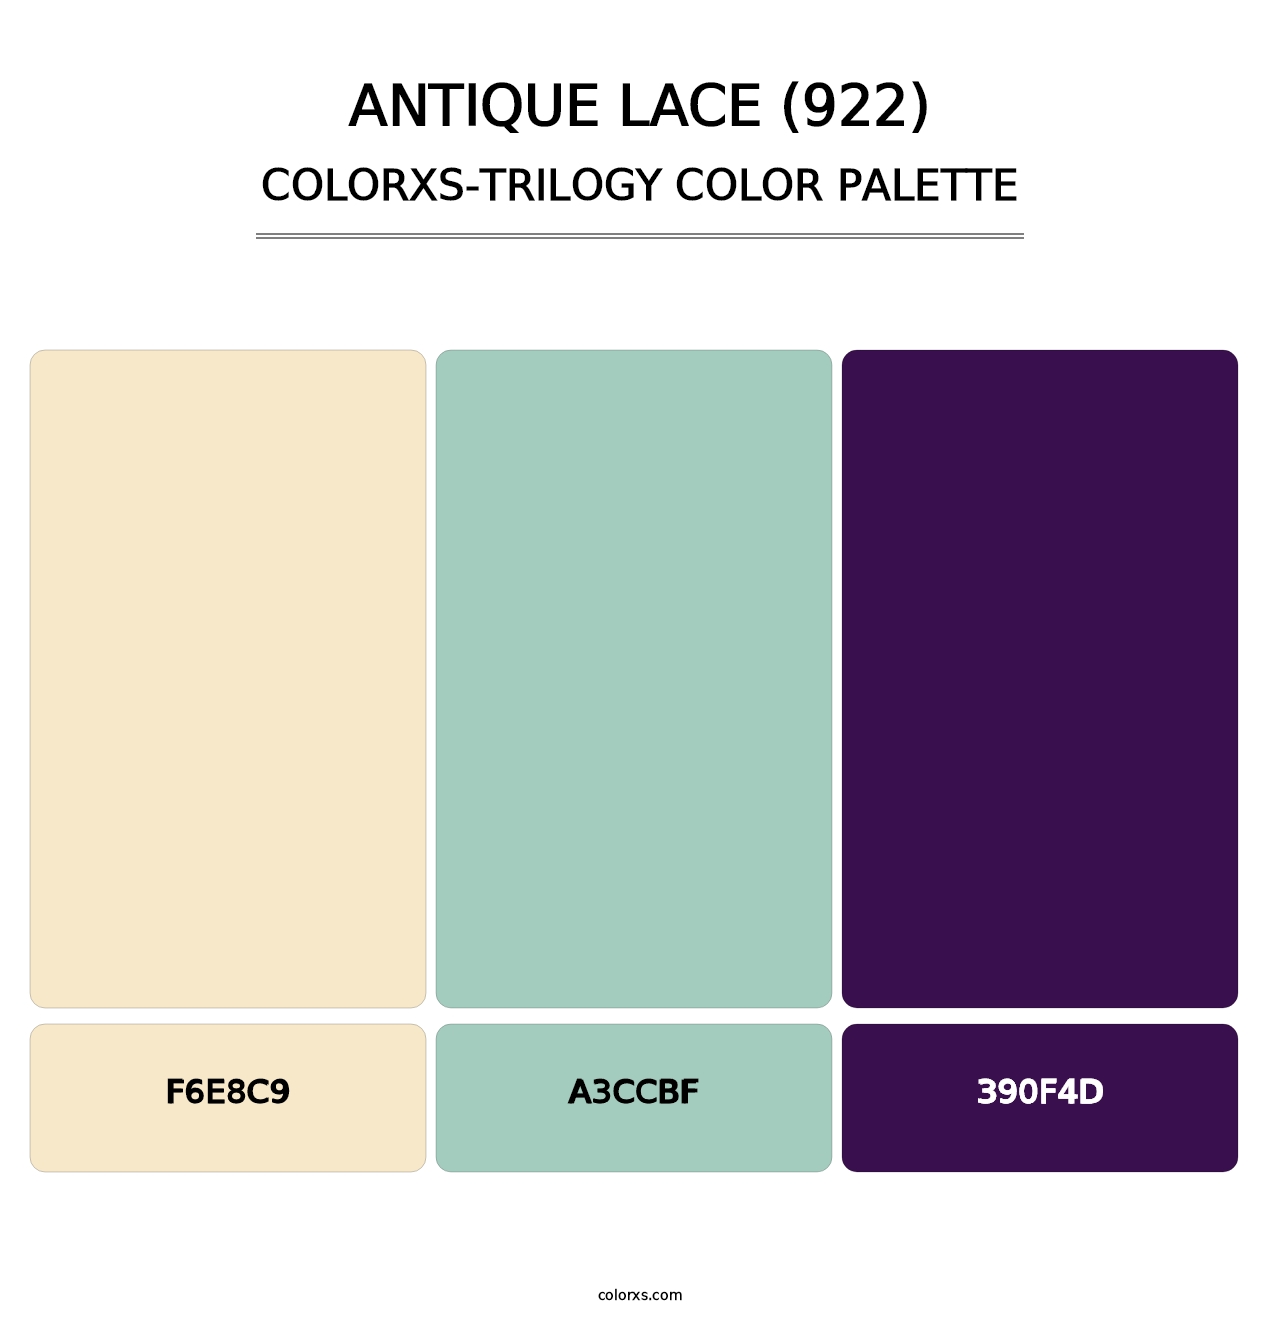 Antique Lace (922) - Colorxs Trilogy Palette